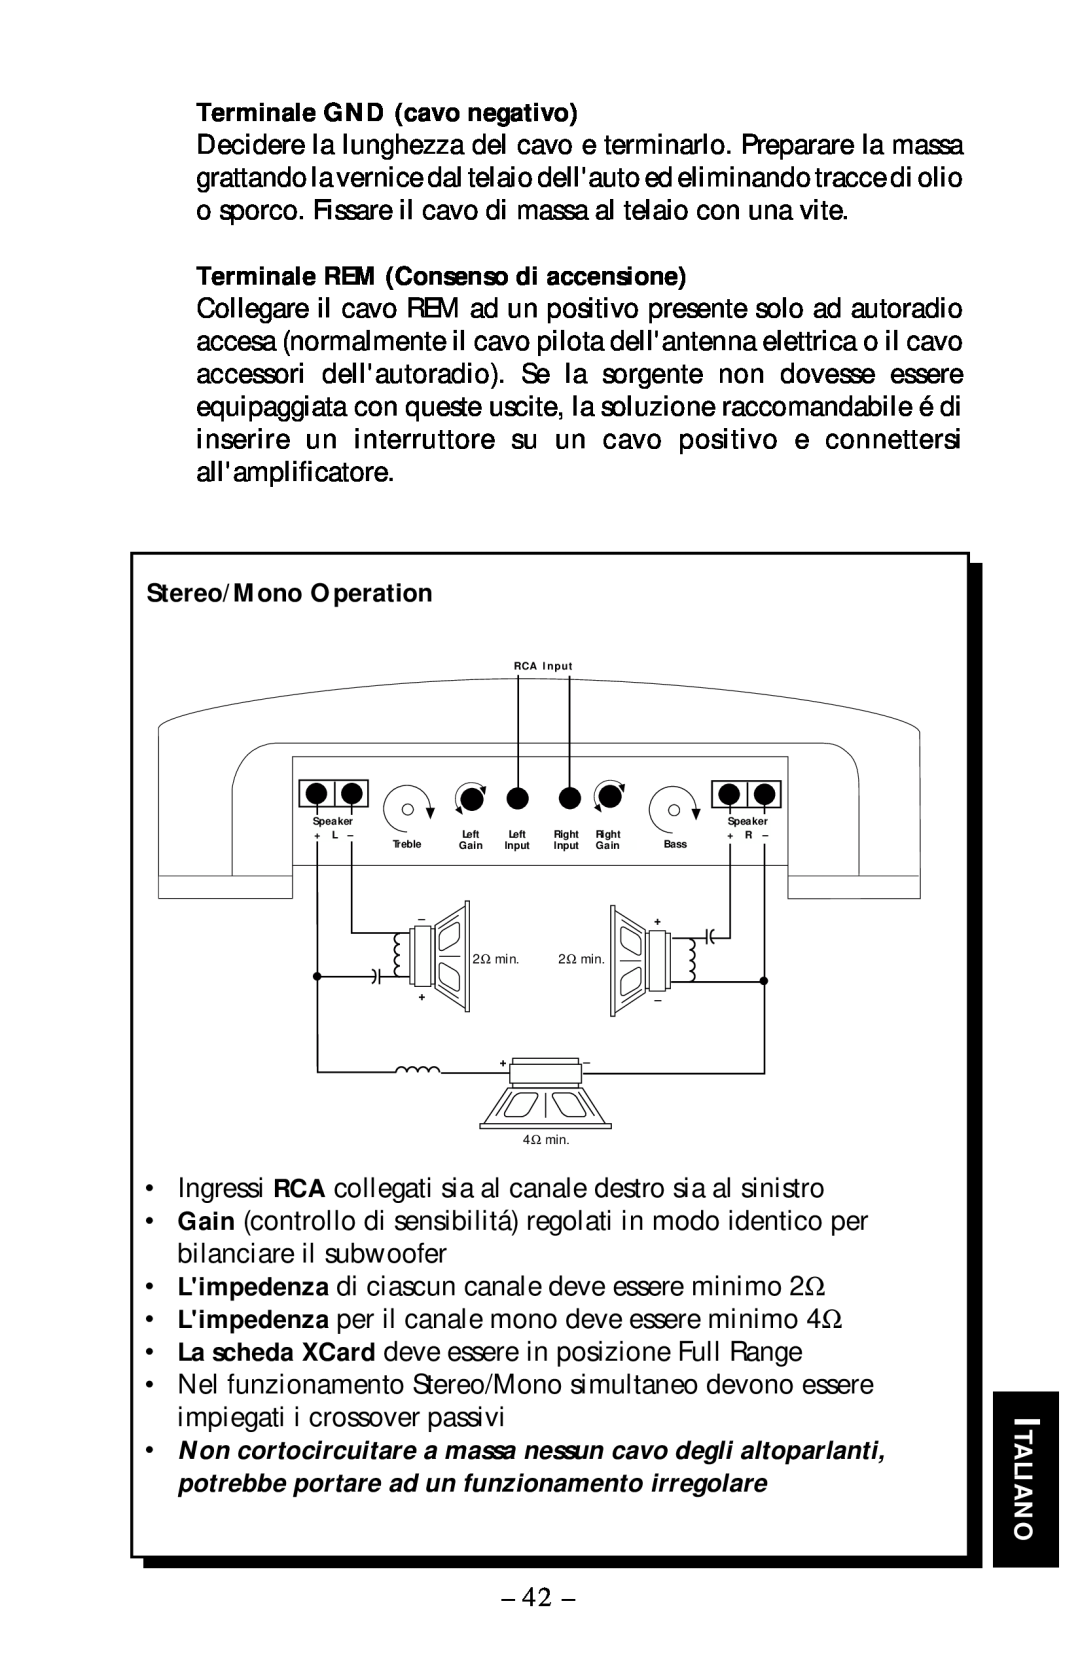 Rockford Fosgate 40X2 manual Terminale GND cavo negativo, Terminale REM Consenso di accensione, Stereo/Mono Operation 